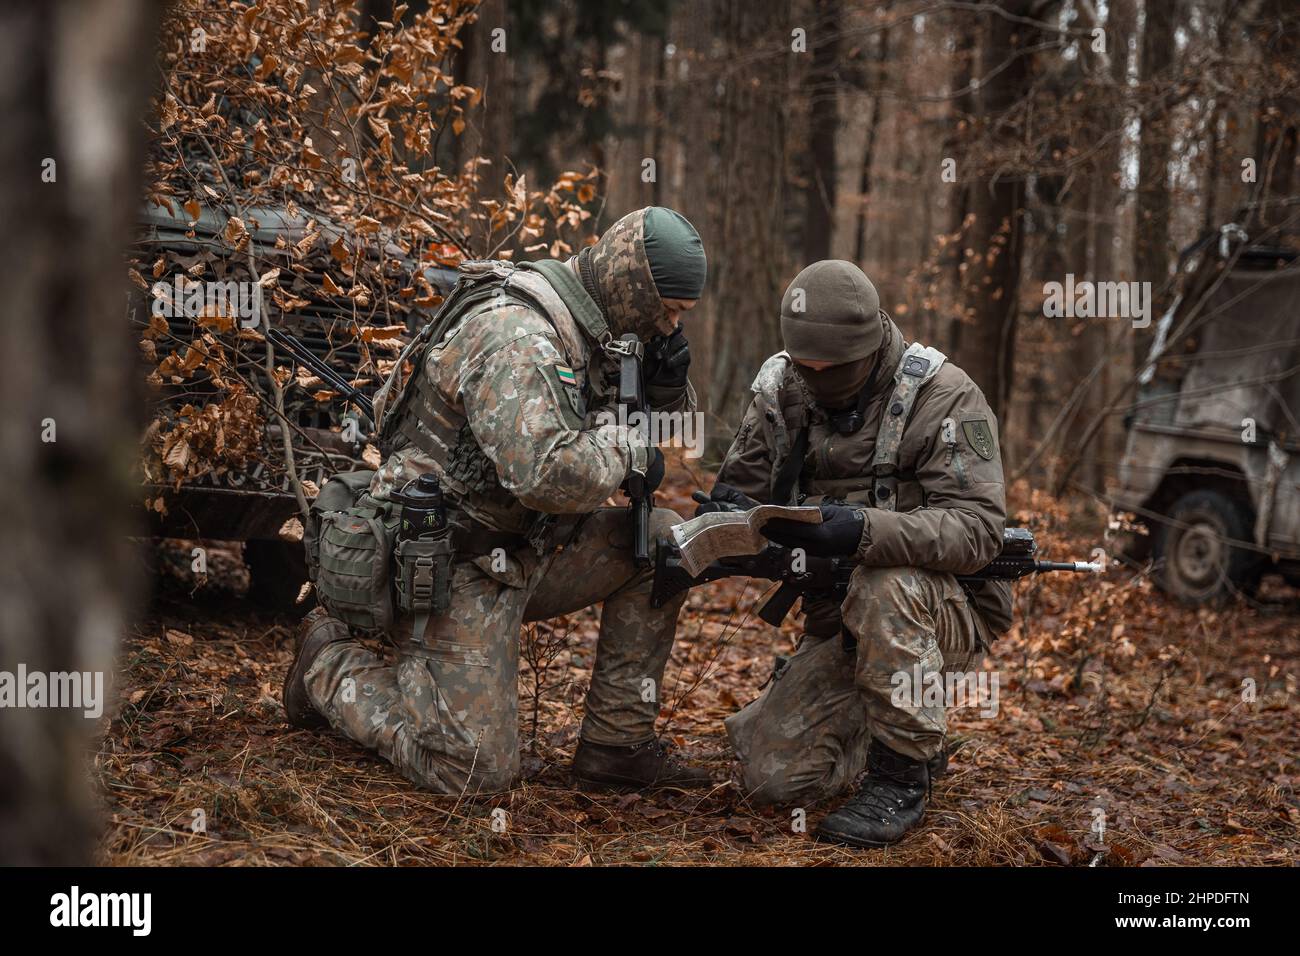 Los soldados lituanos leyeron un mapa durante el Espíritu Aliado 22 en el Área de Entrenamiento de Hohenfels en Alemania el 24 de enero de 2022. Allied Spirit 22 (AS22) es un Ejército de los Estados Unidos dirigido por Europa-África (USAREUR-AF), 7th Mando de Entrenamiento del Ejército (7ATC), dirigido por el Centro Común de Preparación Multinacional (JMRC), auspiciado por el ejercicio de entrenamiento para la Brigada de Infantería Mecanizada Letona 1st (LVA MI BDE) del 11 de enero de 22 al 05 de febrero de 22. El ejercicio desarrollará y mejorará la interoperabilidad y la preparación de la OTAN y de los socios clave a través de determinadas funciones de lucha contra la guerra. Foto de stock